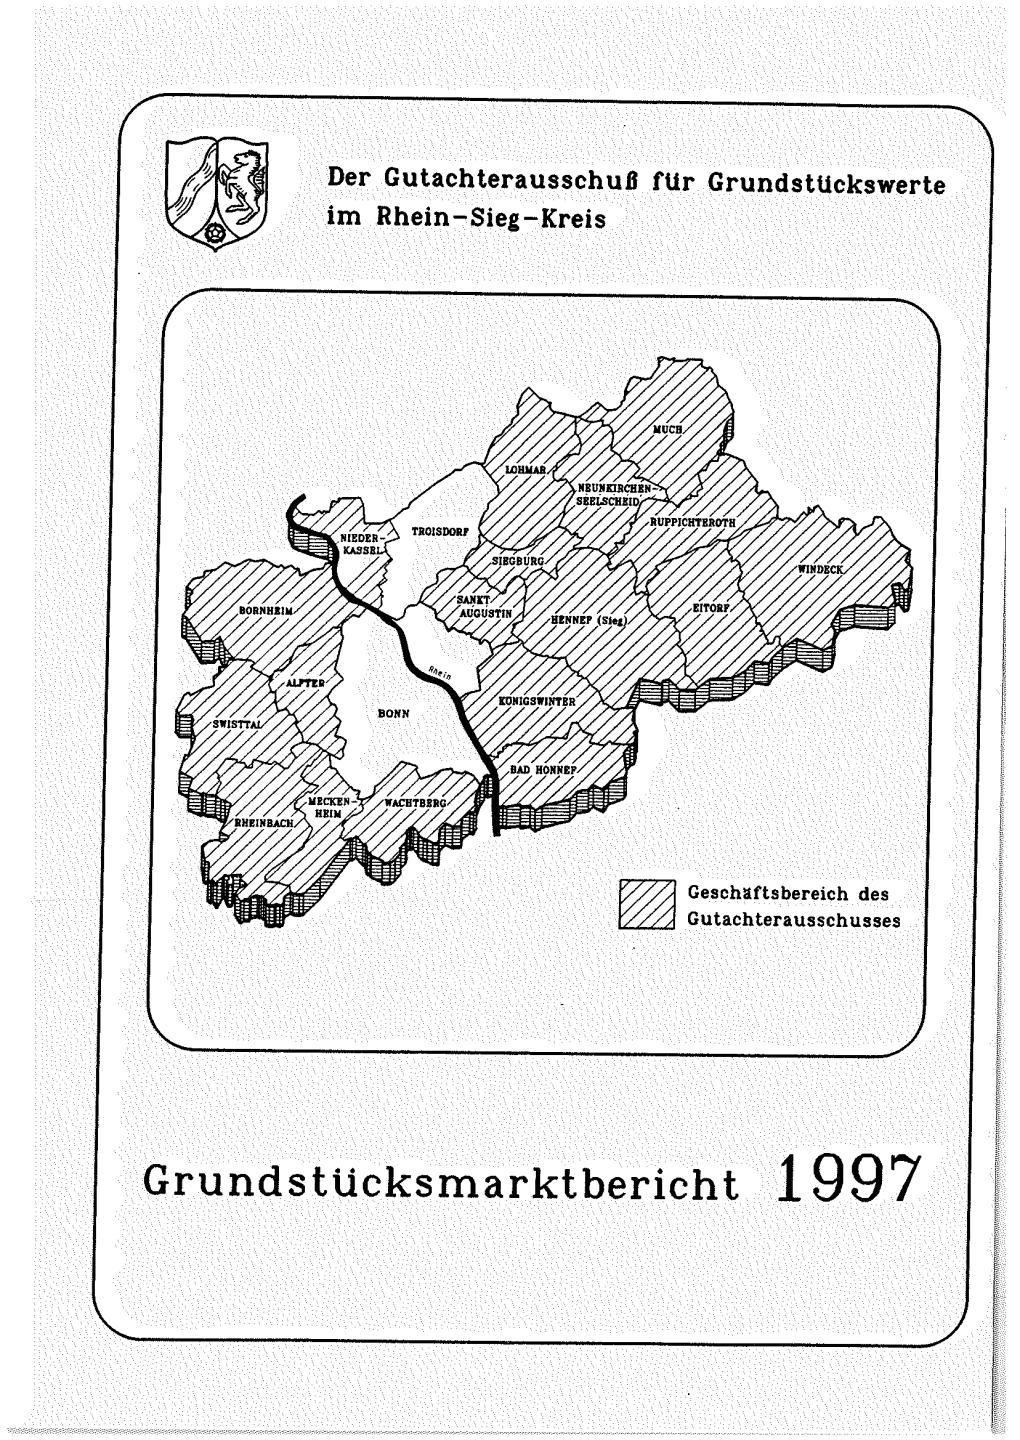 Grundstücksmarktbericht 1997 Der Gutachterausschug Für Grundstückswerte Im Rhein-Sieg-Kreis